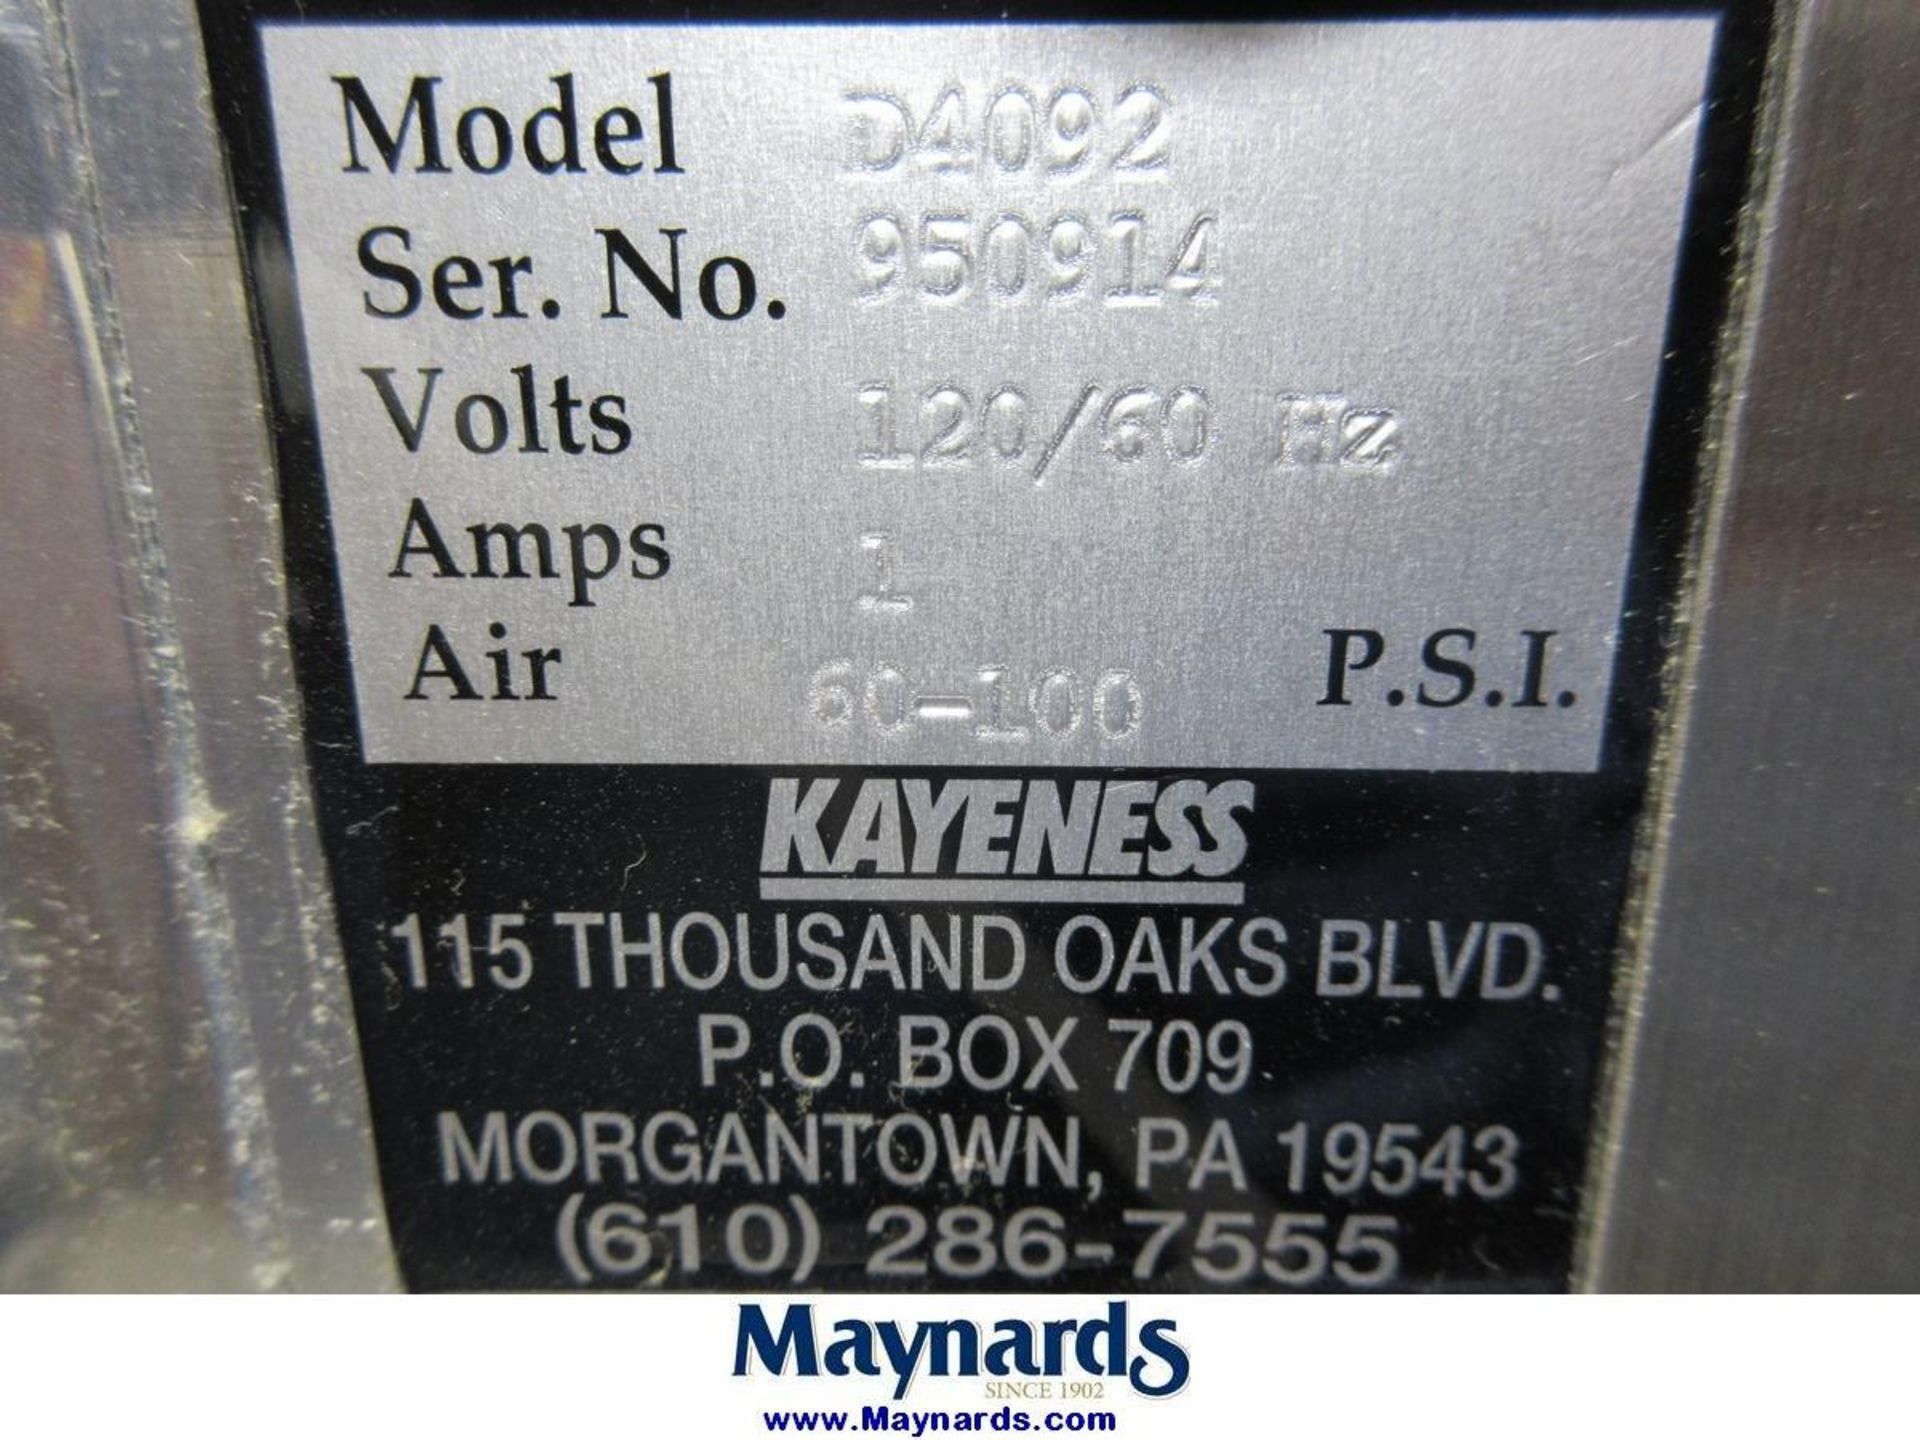 Kayeness Inc D4092 Pneumatic Drop Tester - Image 6 of 6